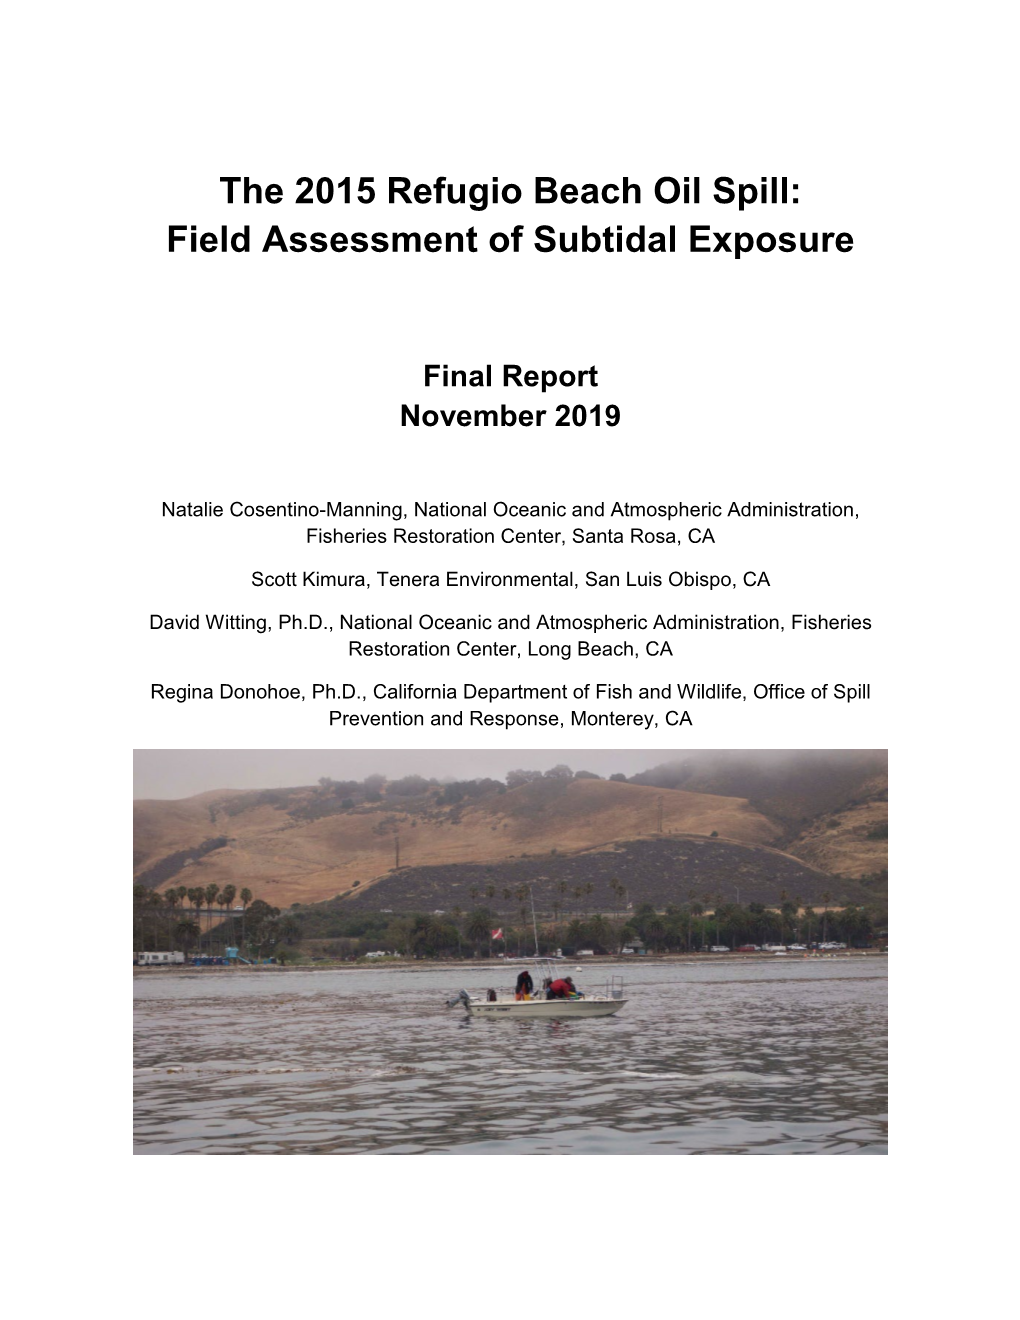 The 2015 Refugio Beach Oil Spill: Field Assessment of Subtidal Exposure